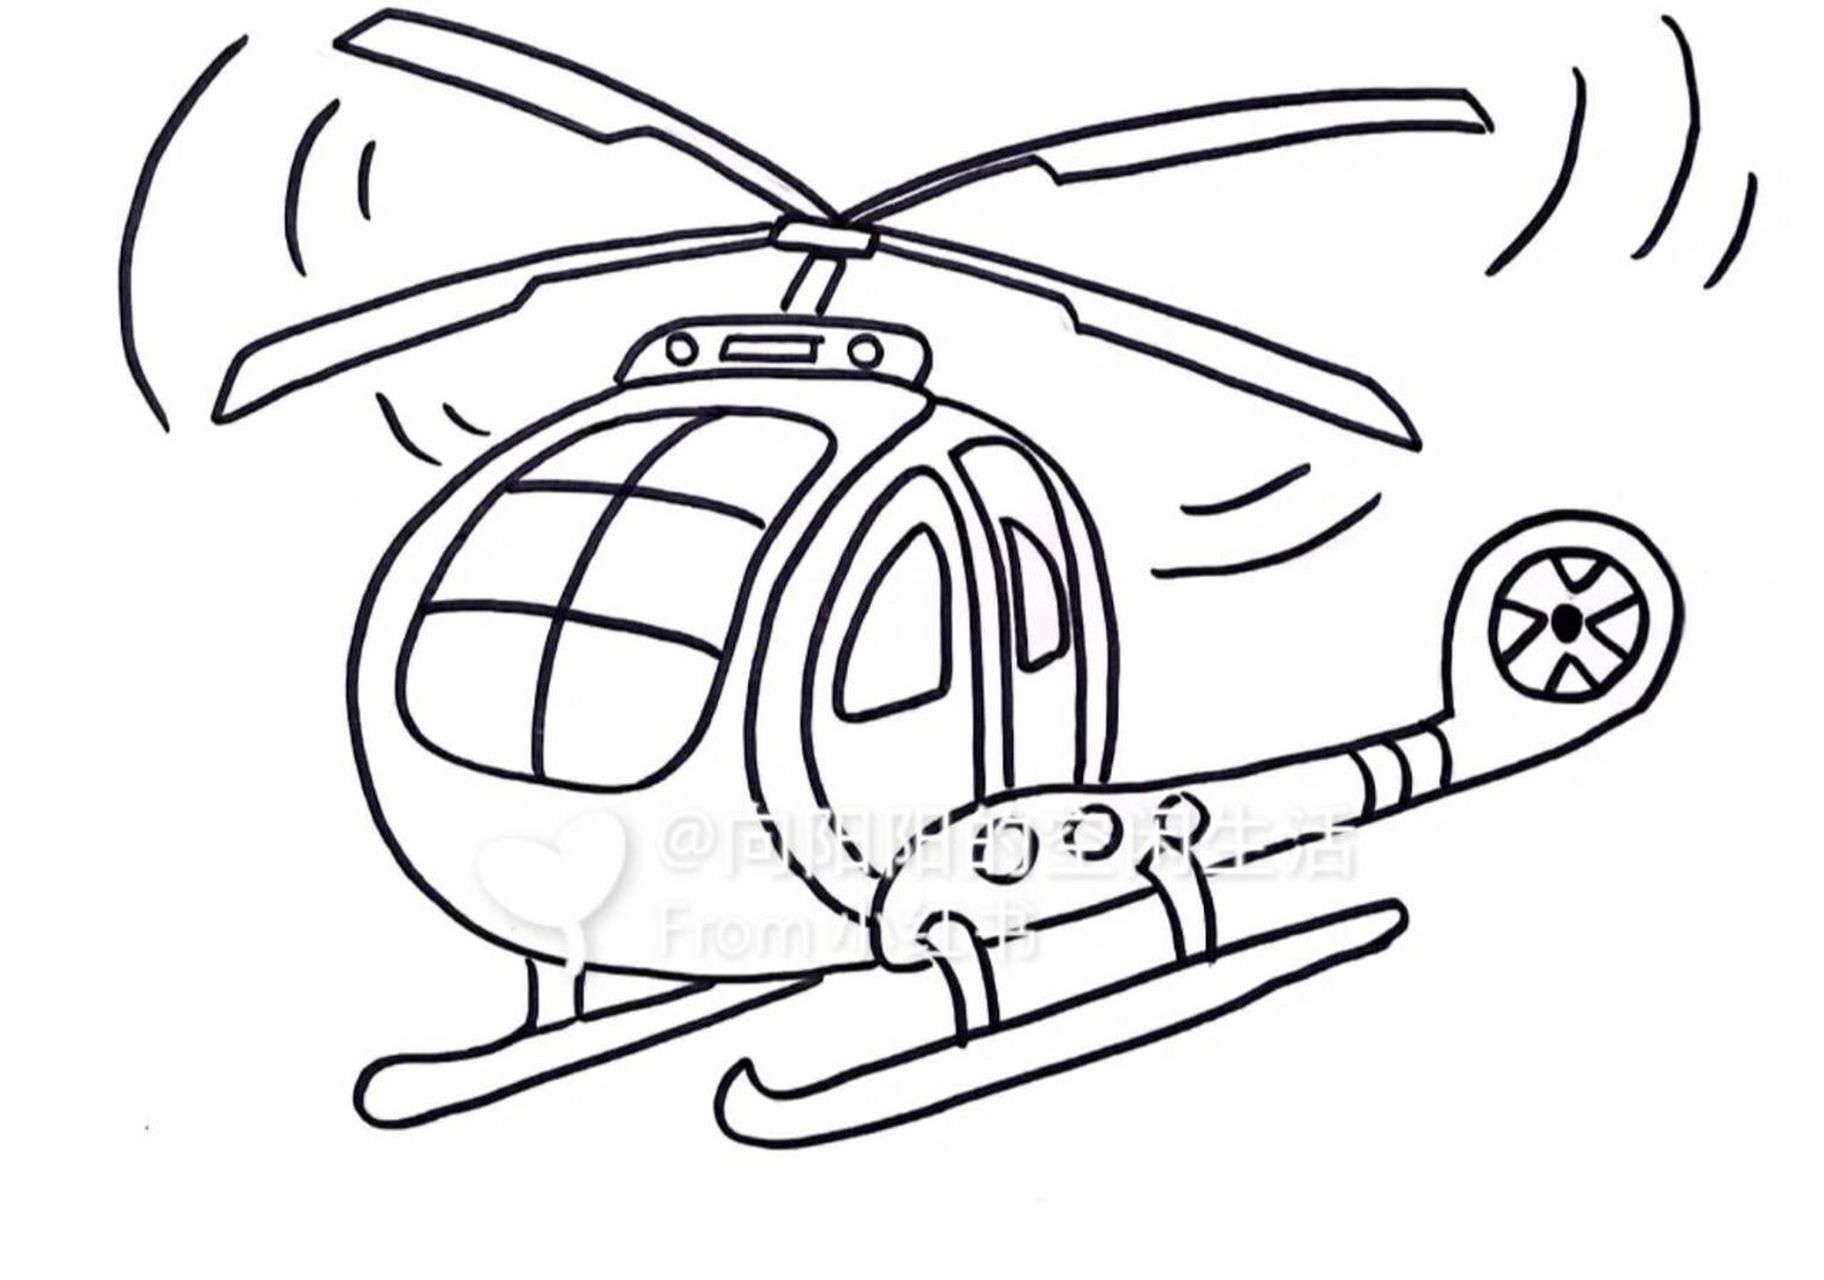 直升飞机 简笔画教程 立体马克笔涂色 临摹